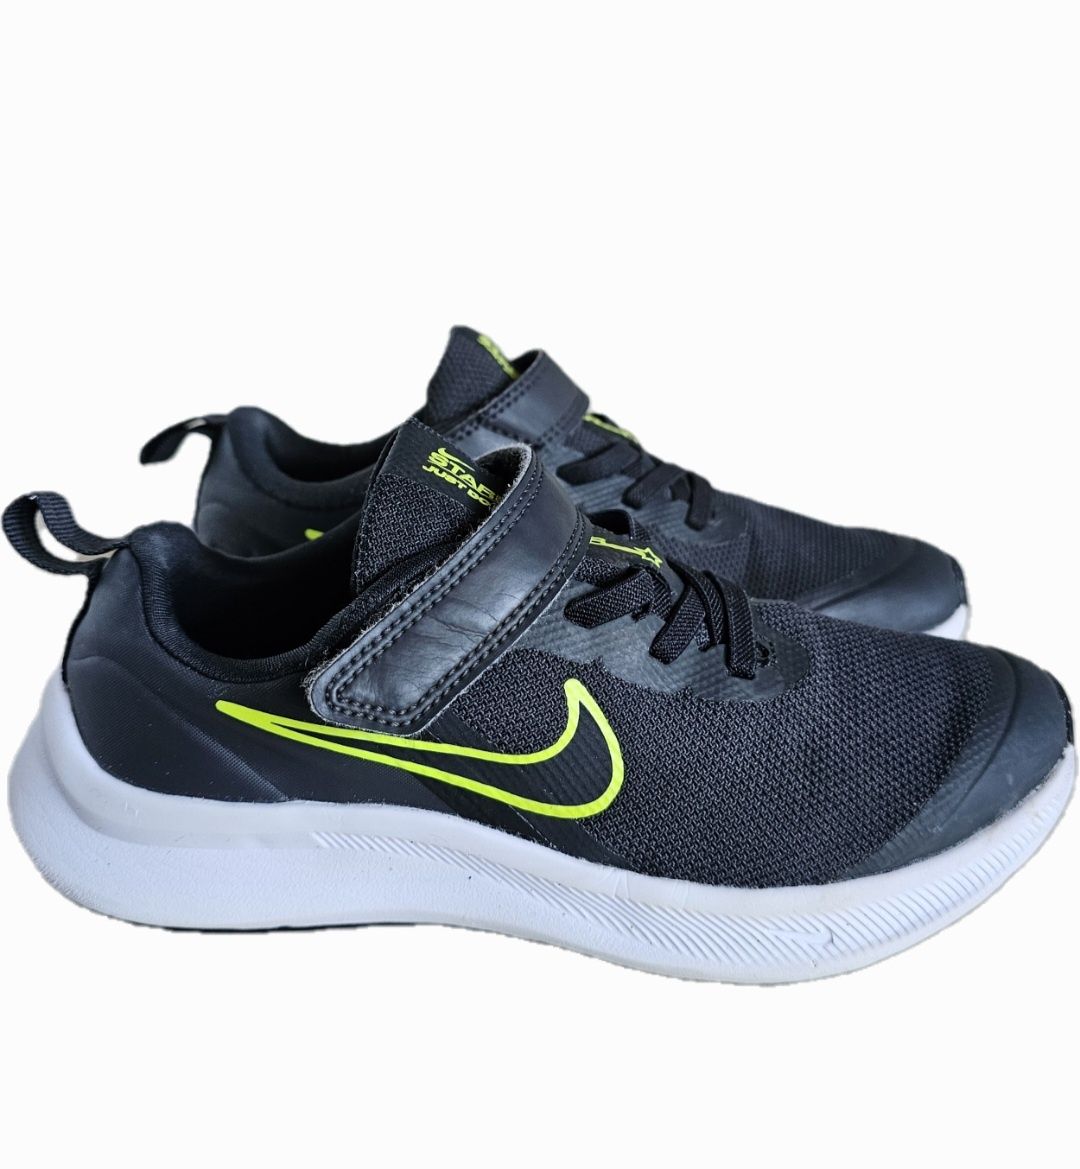 Підліткові кросівки для хлопчика "Nike Star Runner 3 " DA2777-004